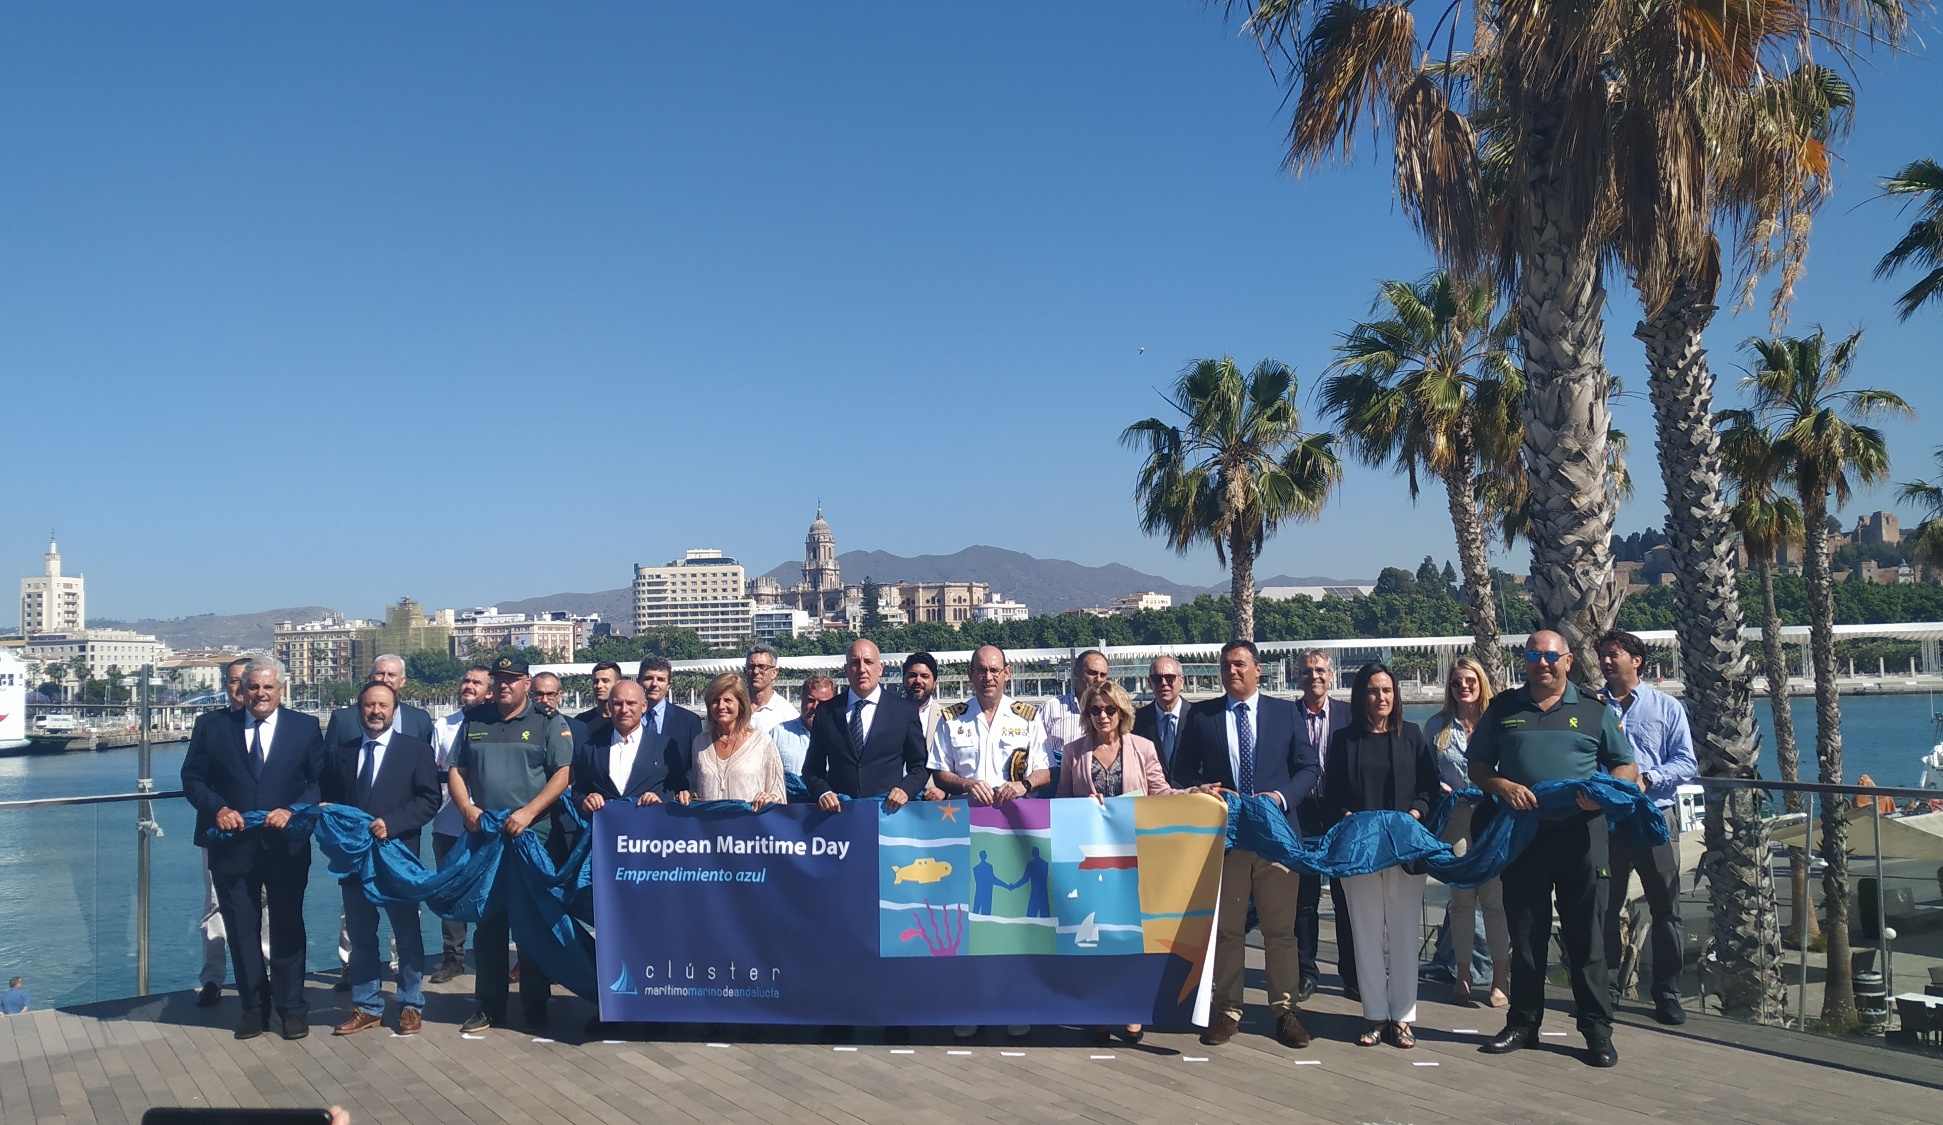 Marinas de Andalucía participa en el acto de celebración del Día Marítimo Europeo